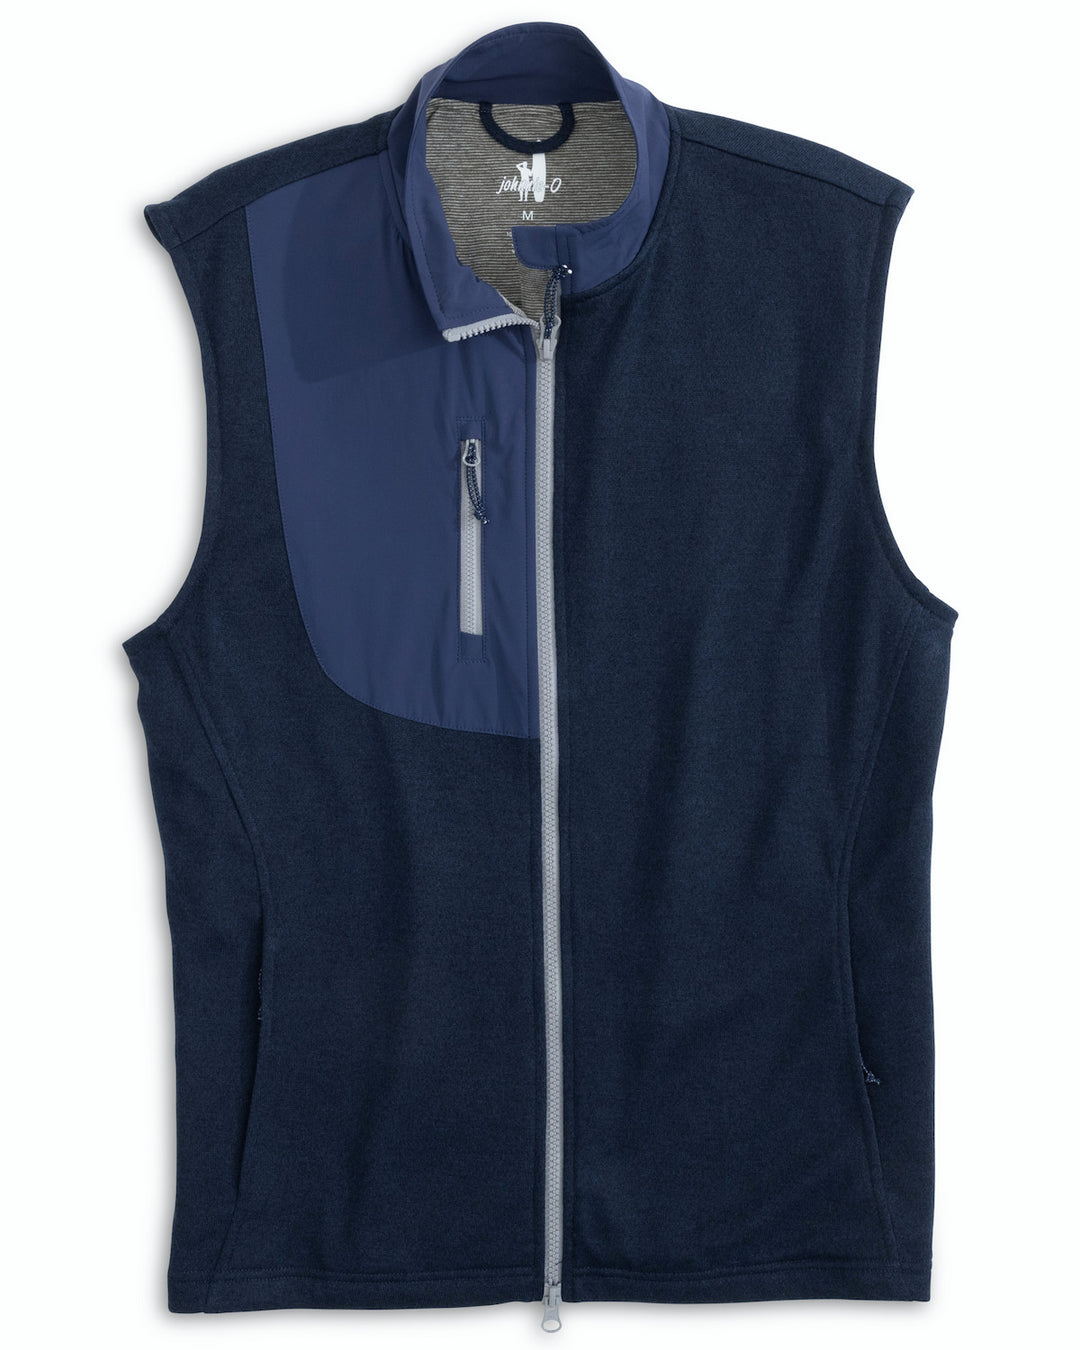 Johnnie-O Glover Full-Zip Fleece Vest